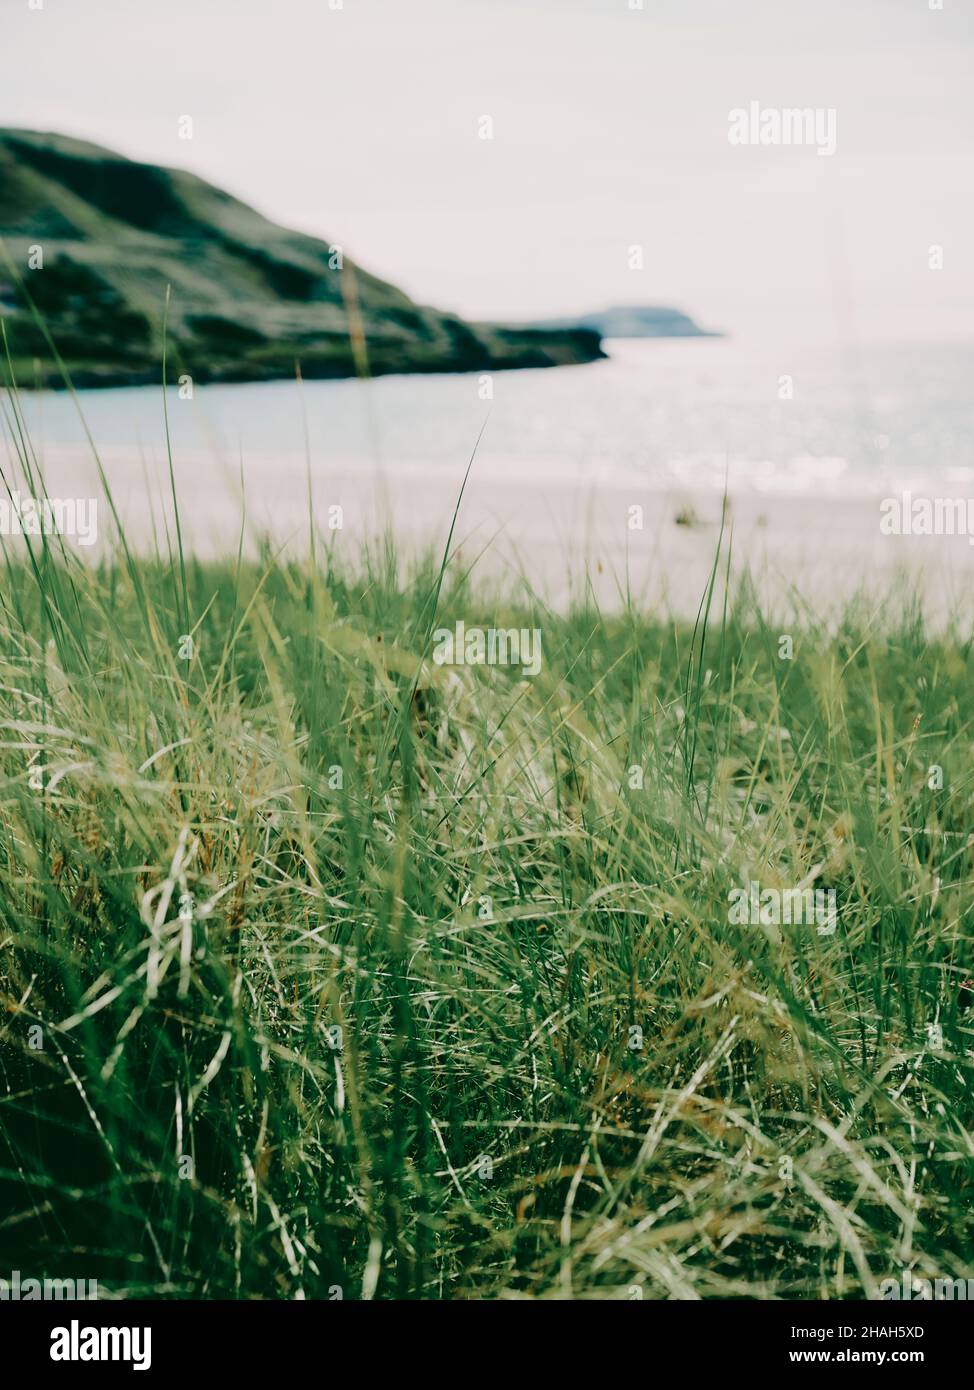 Un mínimo escocés Marram hierba dunas de arena, playa y mar paisaje de verano en la isla de Mull, Inner Hebrides, Escocia Reino Unido - fondo de la costa de verano Foto de stock